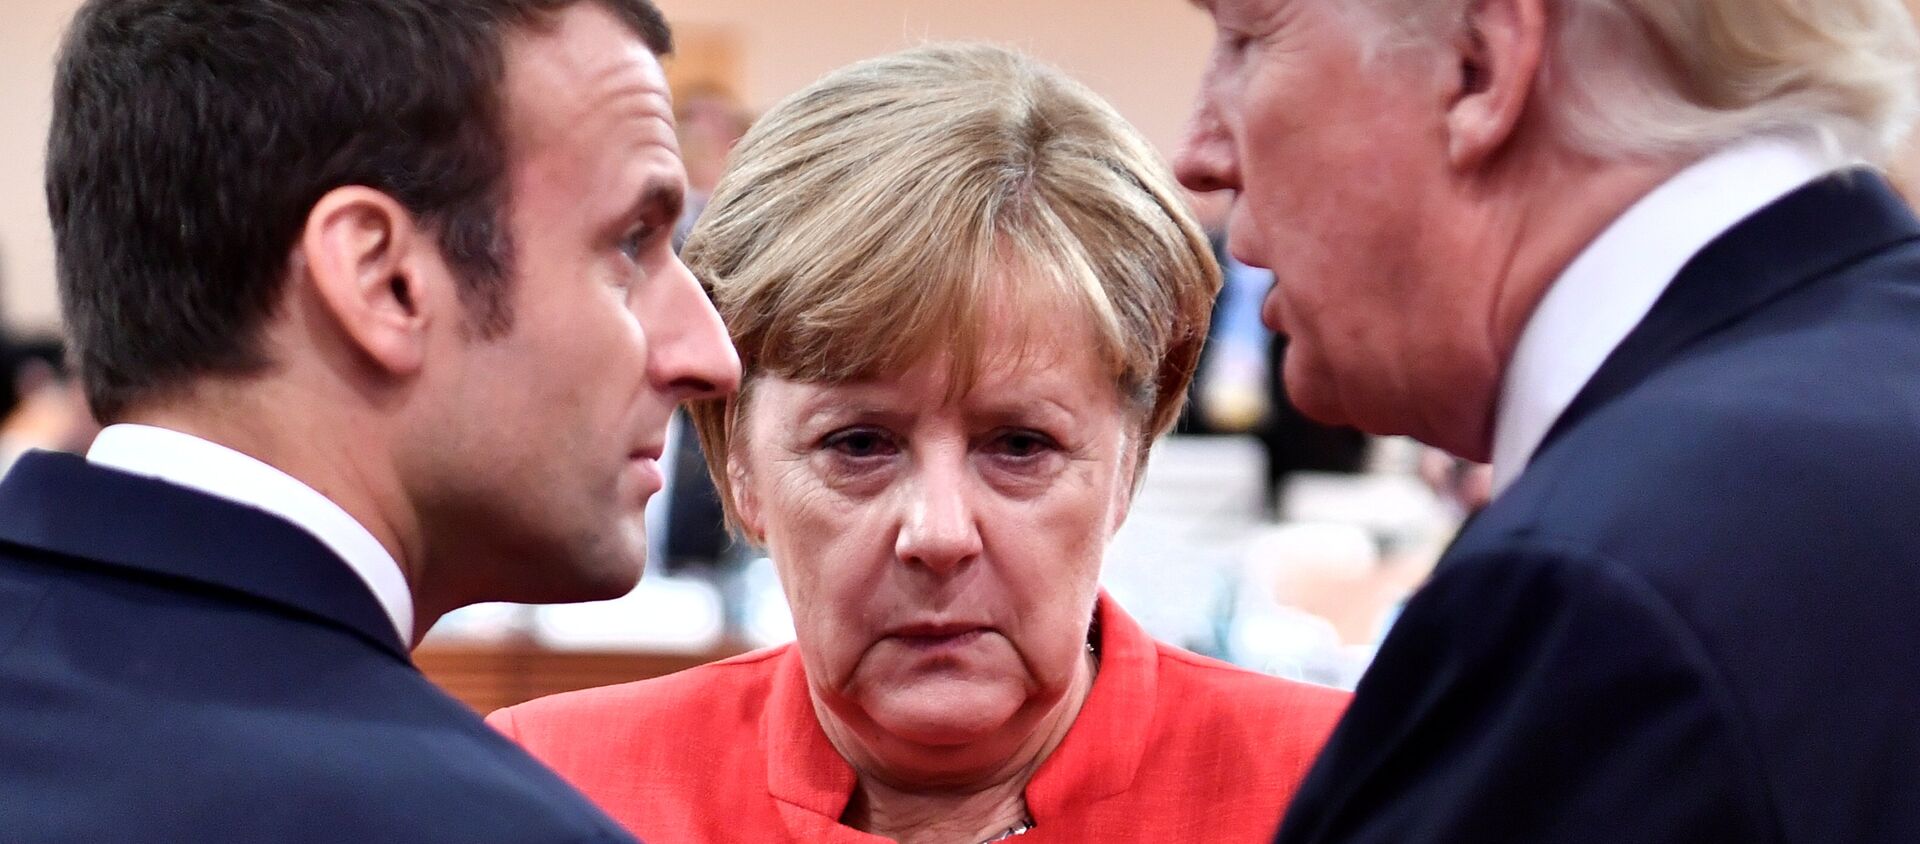 Emmanuel Macron, Angela Merkel et Donald Trump à Hambourg le 7 juillet 2017. - Sputnik Afrique, 1920, 07.02.2019